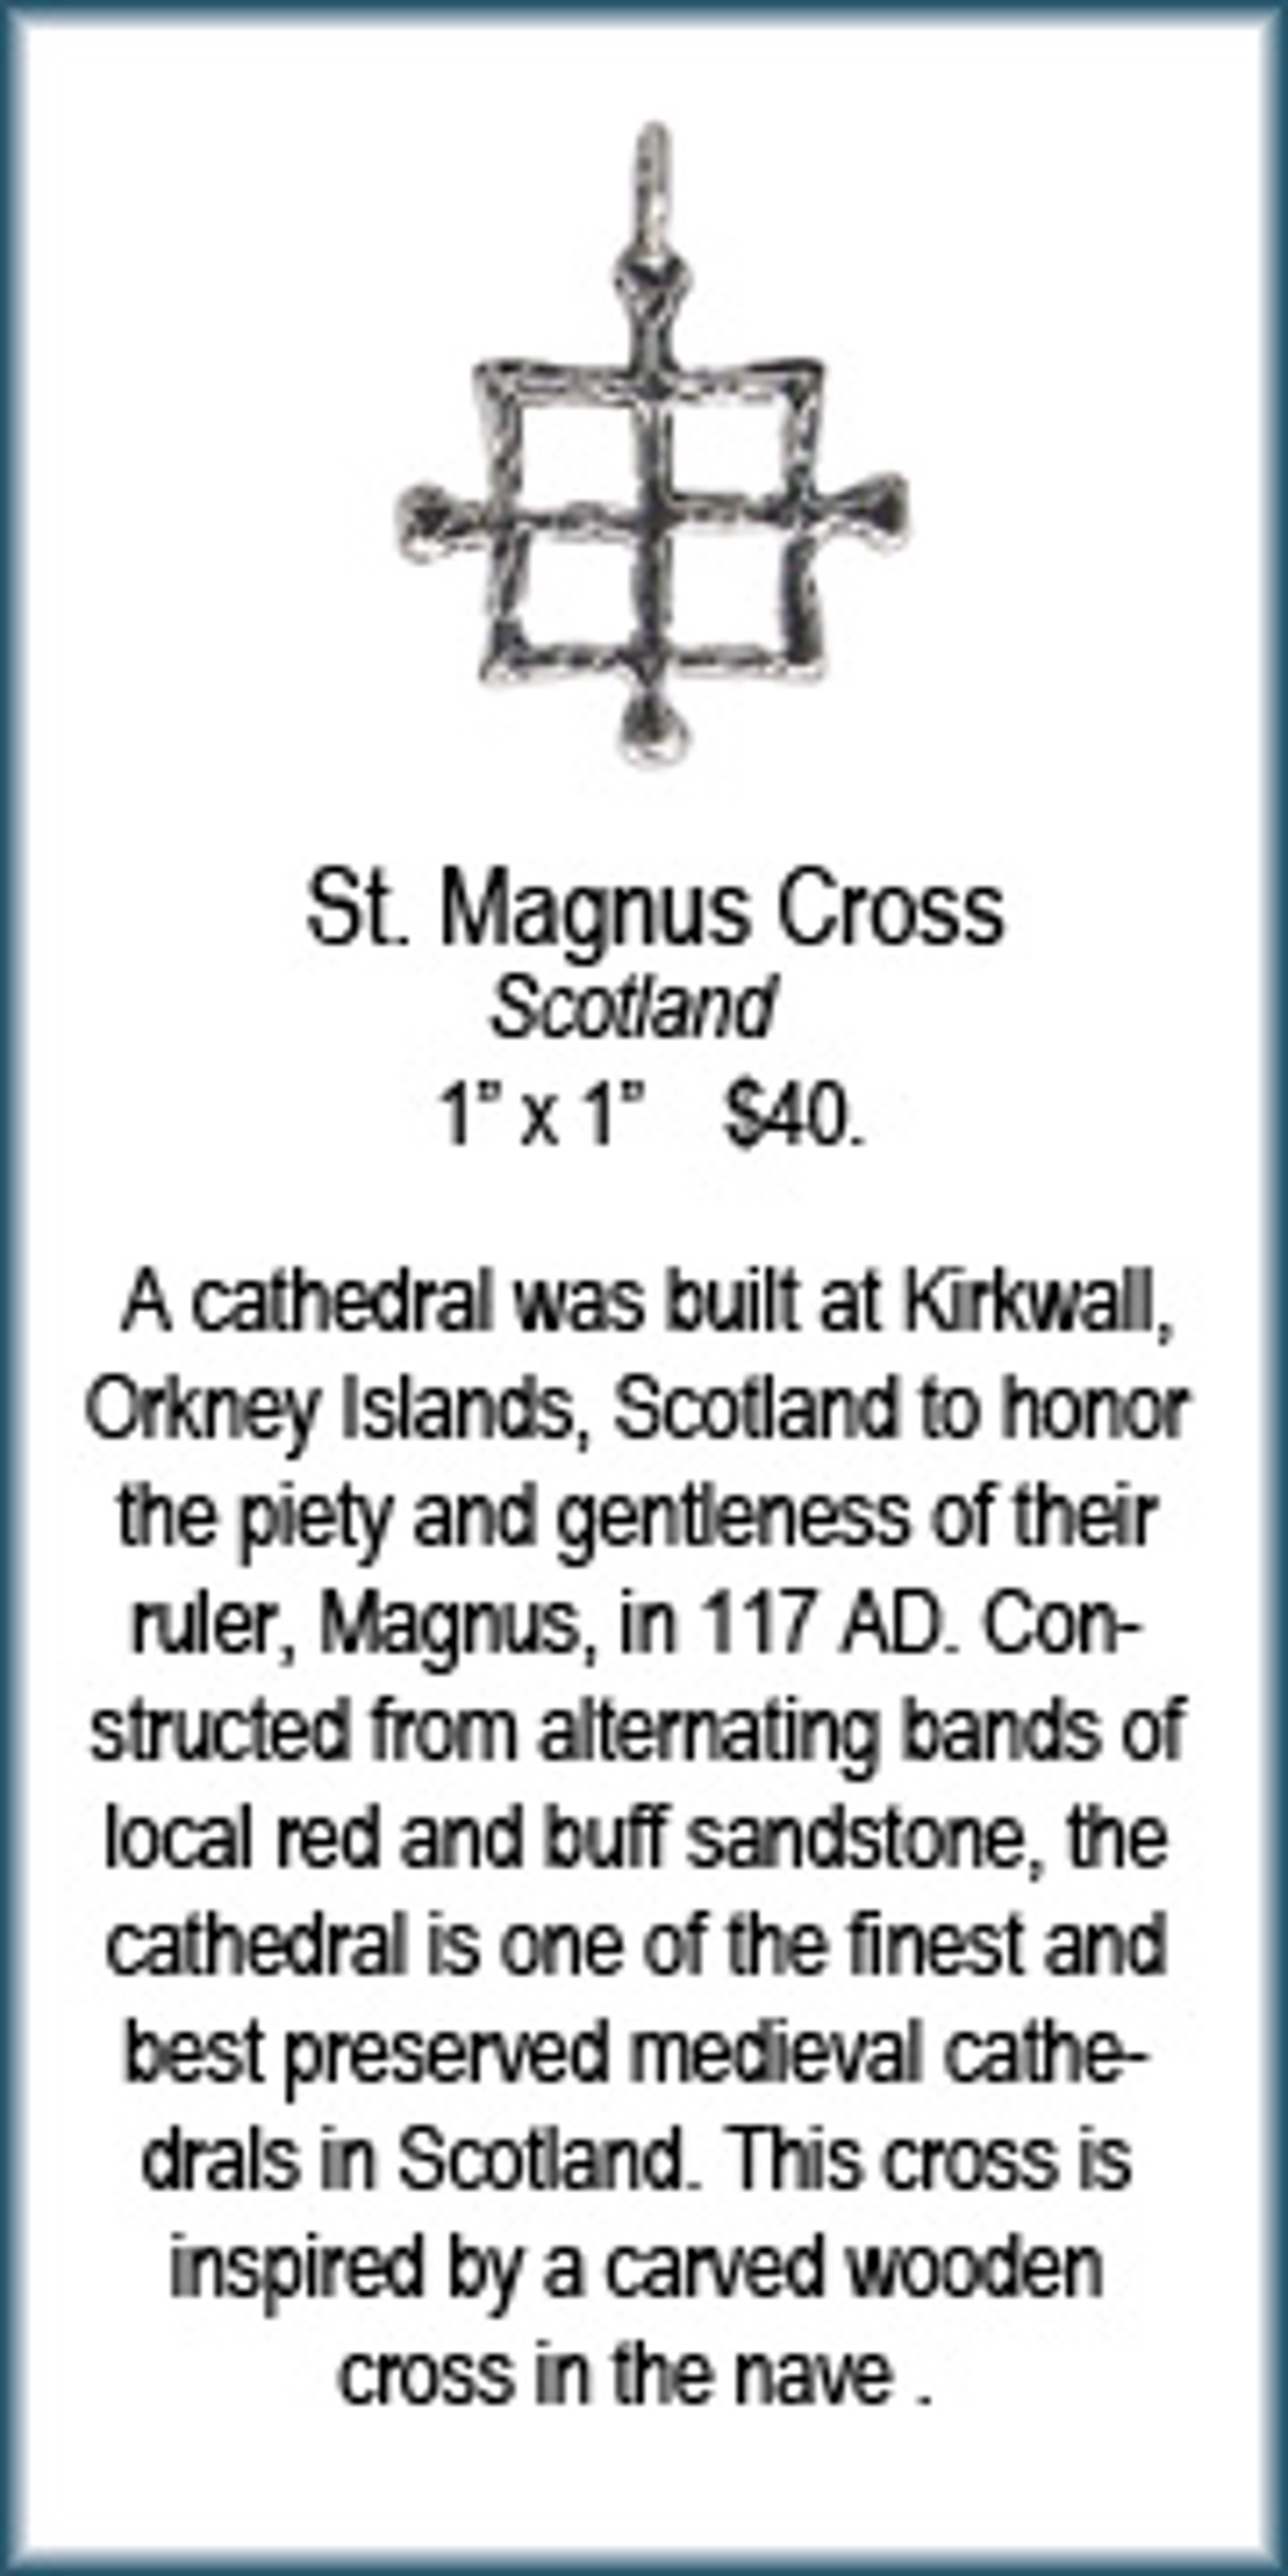 Cross - St. Magnus by Deanne McKeown